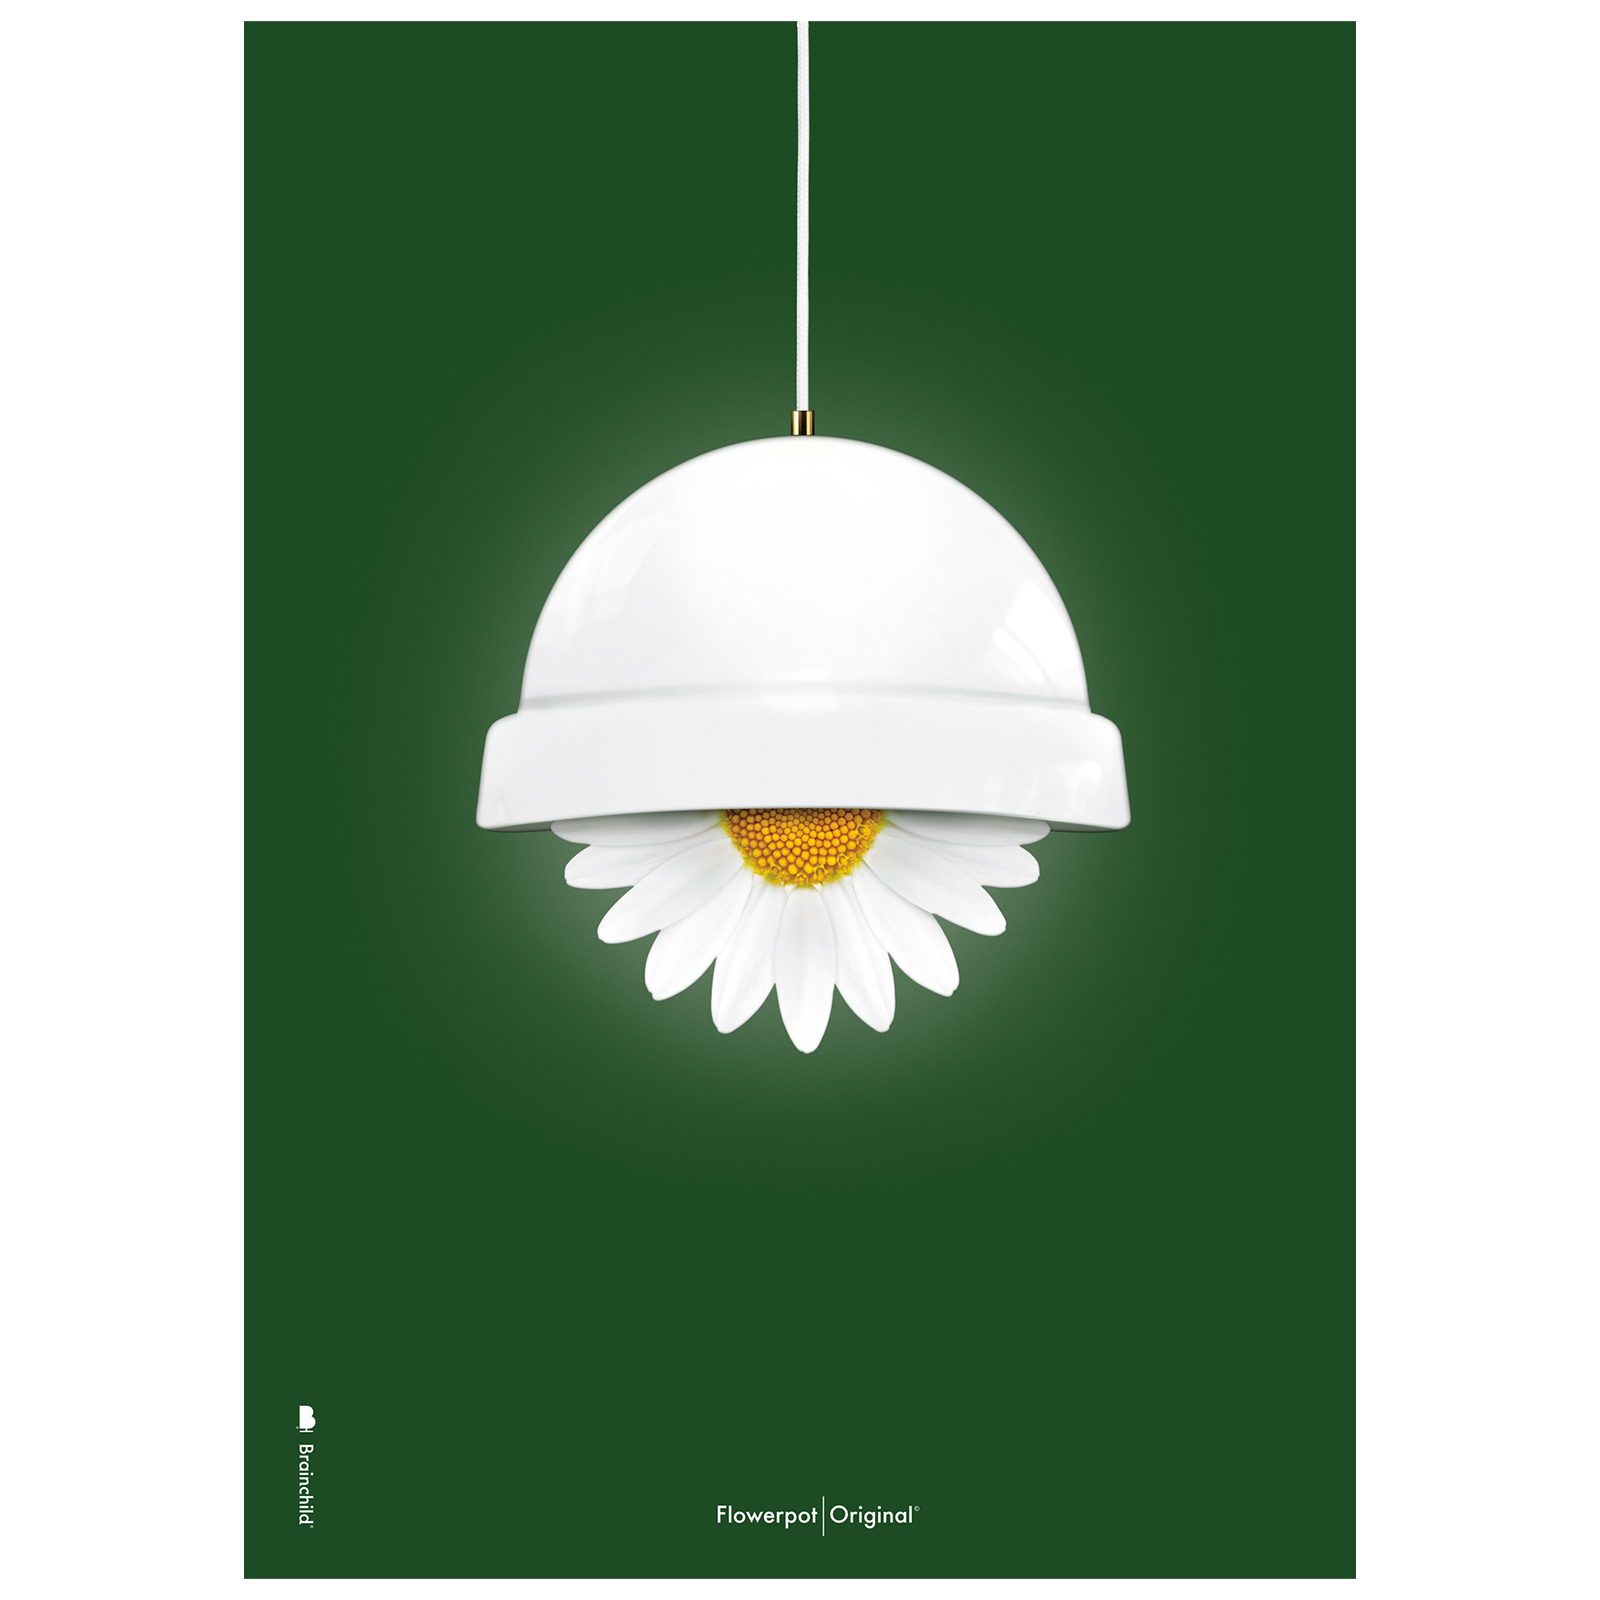 Variant: Plakat med Flowerpot - Grøn Klassisk